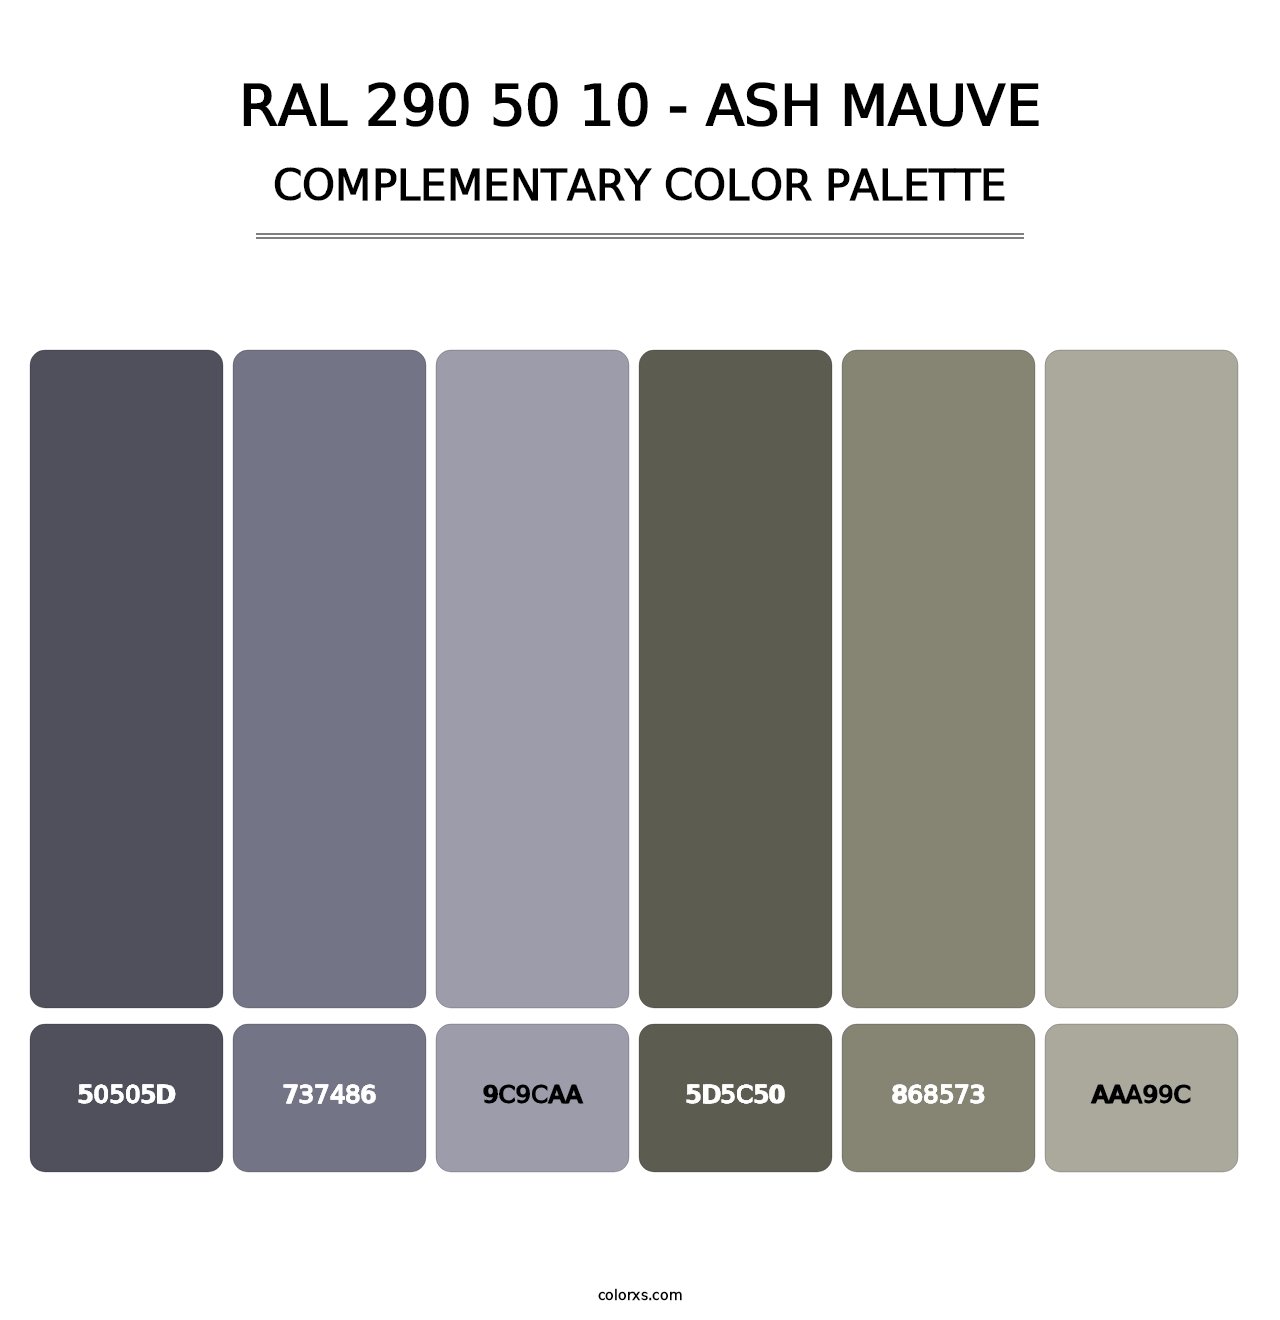 RAL 290 50 10 - Ash Mauve - Complementary Color Palette